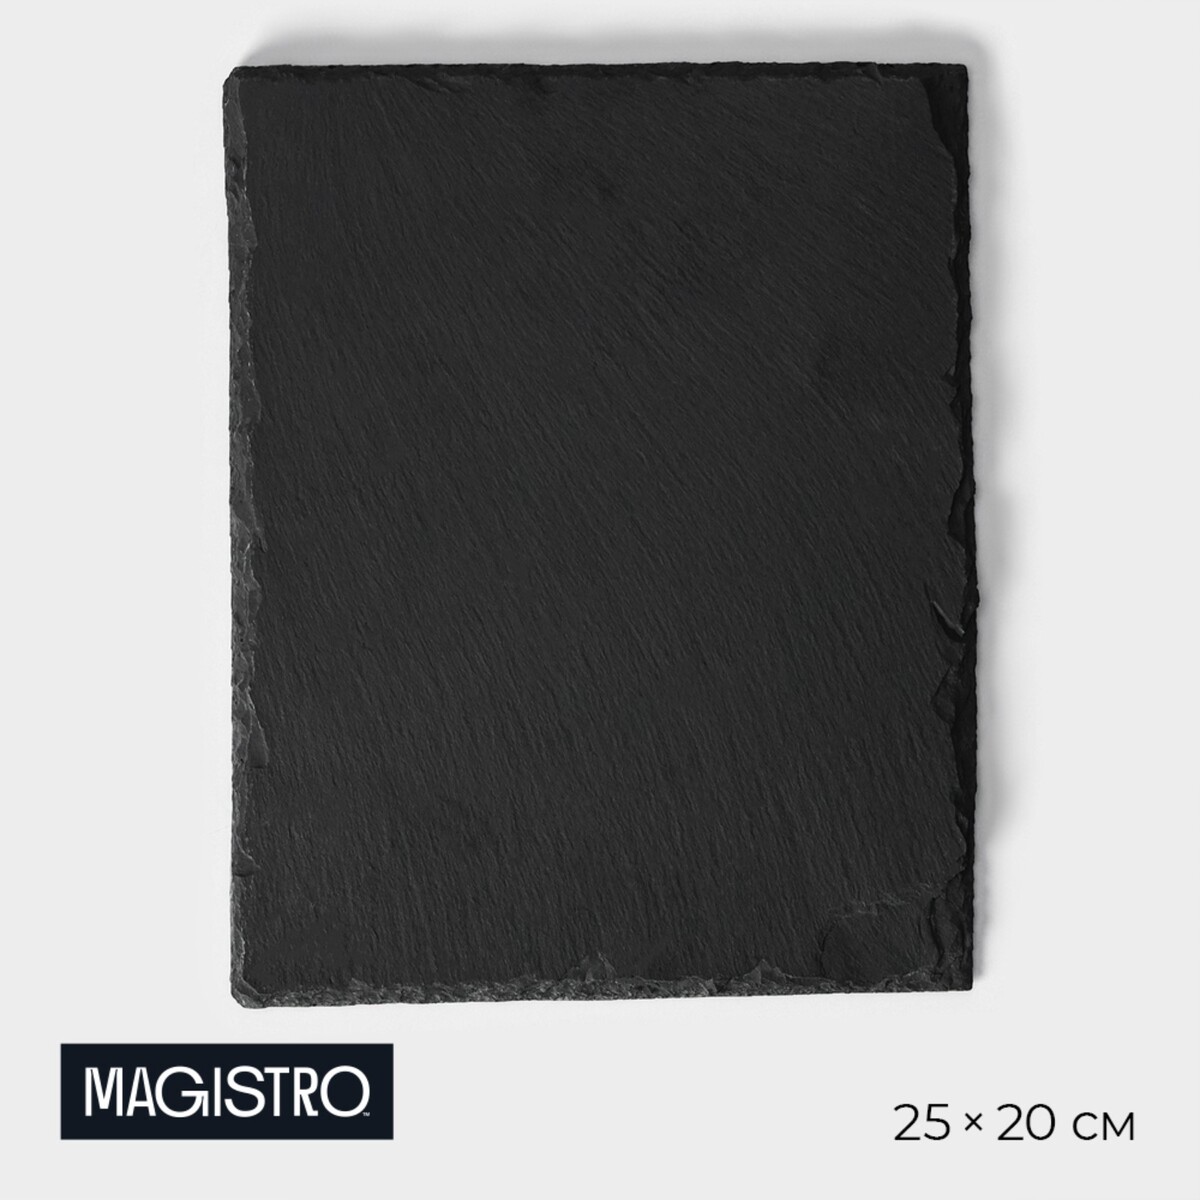 Доска для подачи из сланца magistro valley, 25×20 см блюдо фарфоровое для подачи magistro pietra lunare d 21 см чёрный